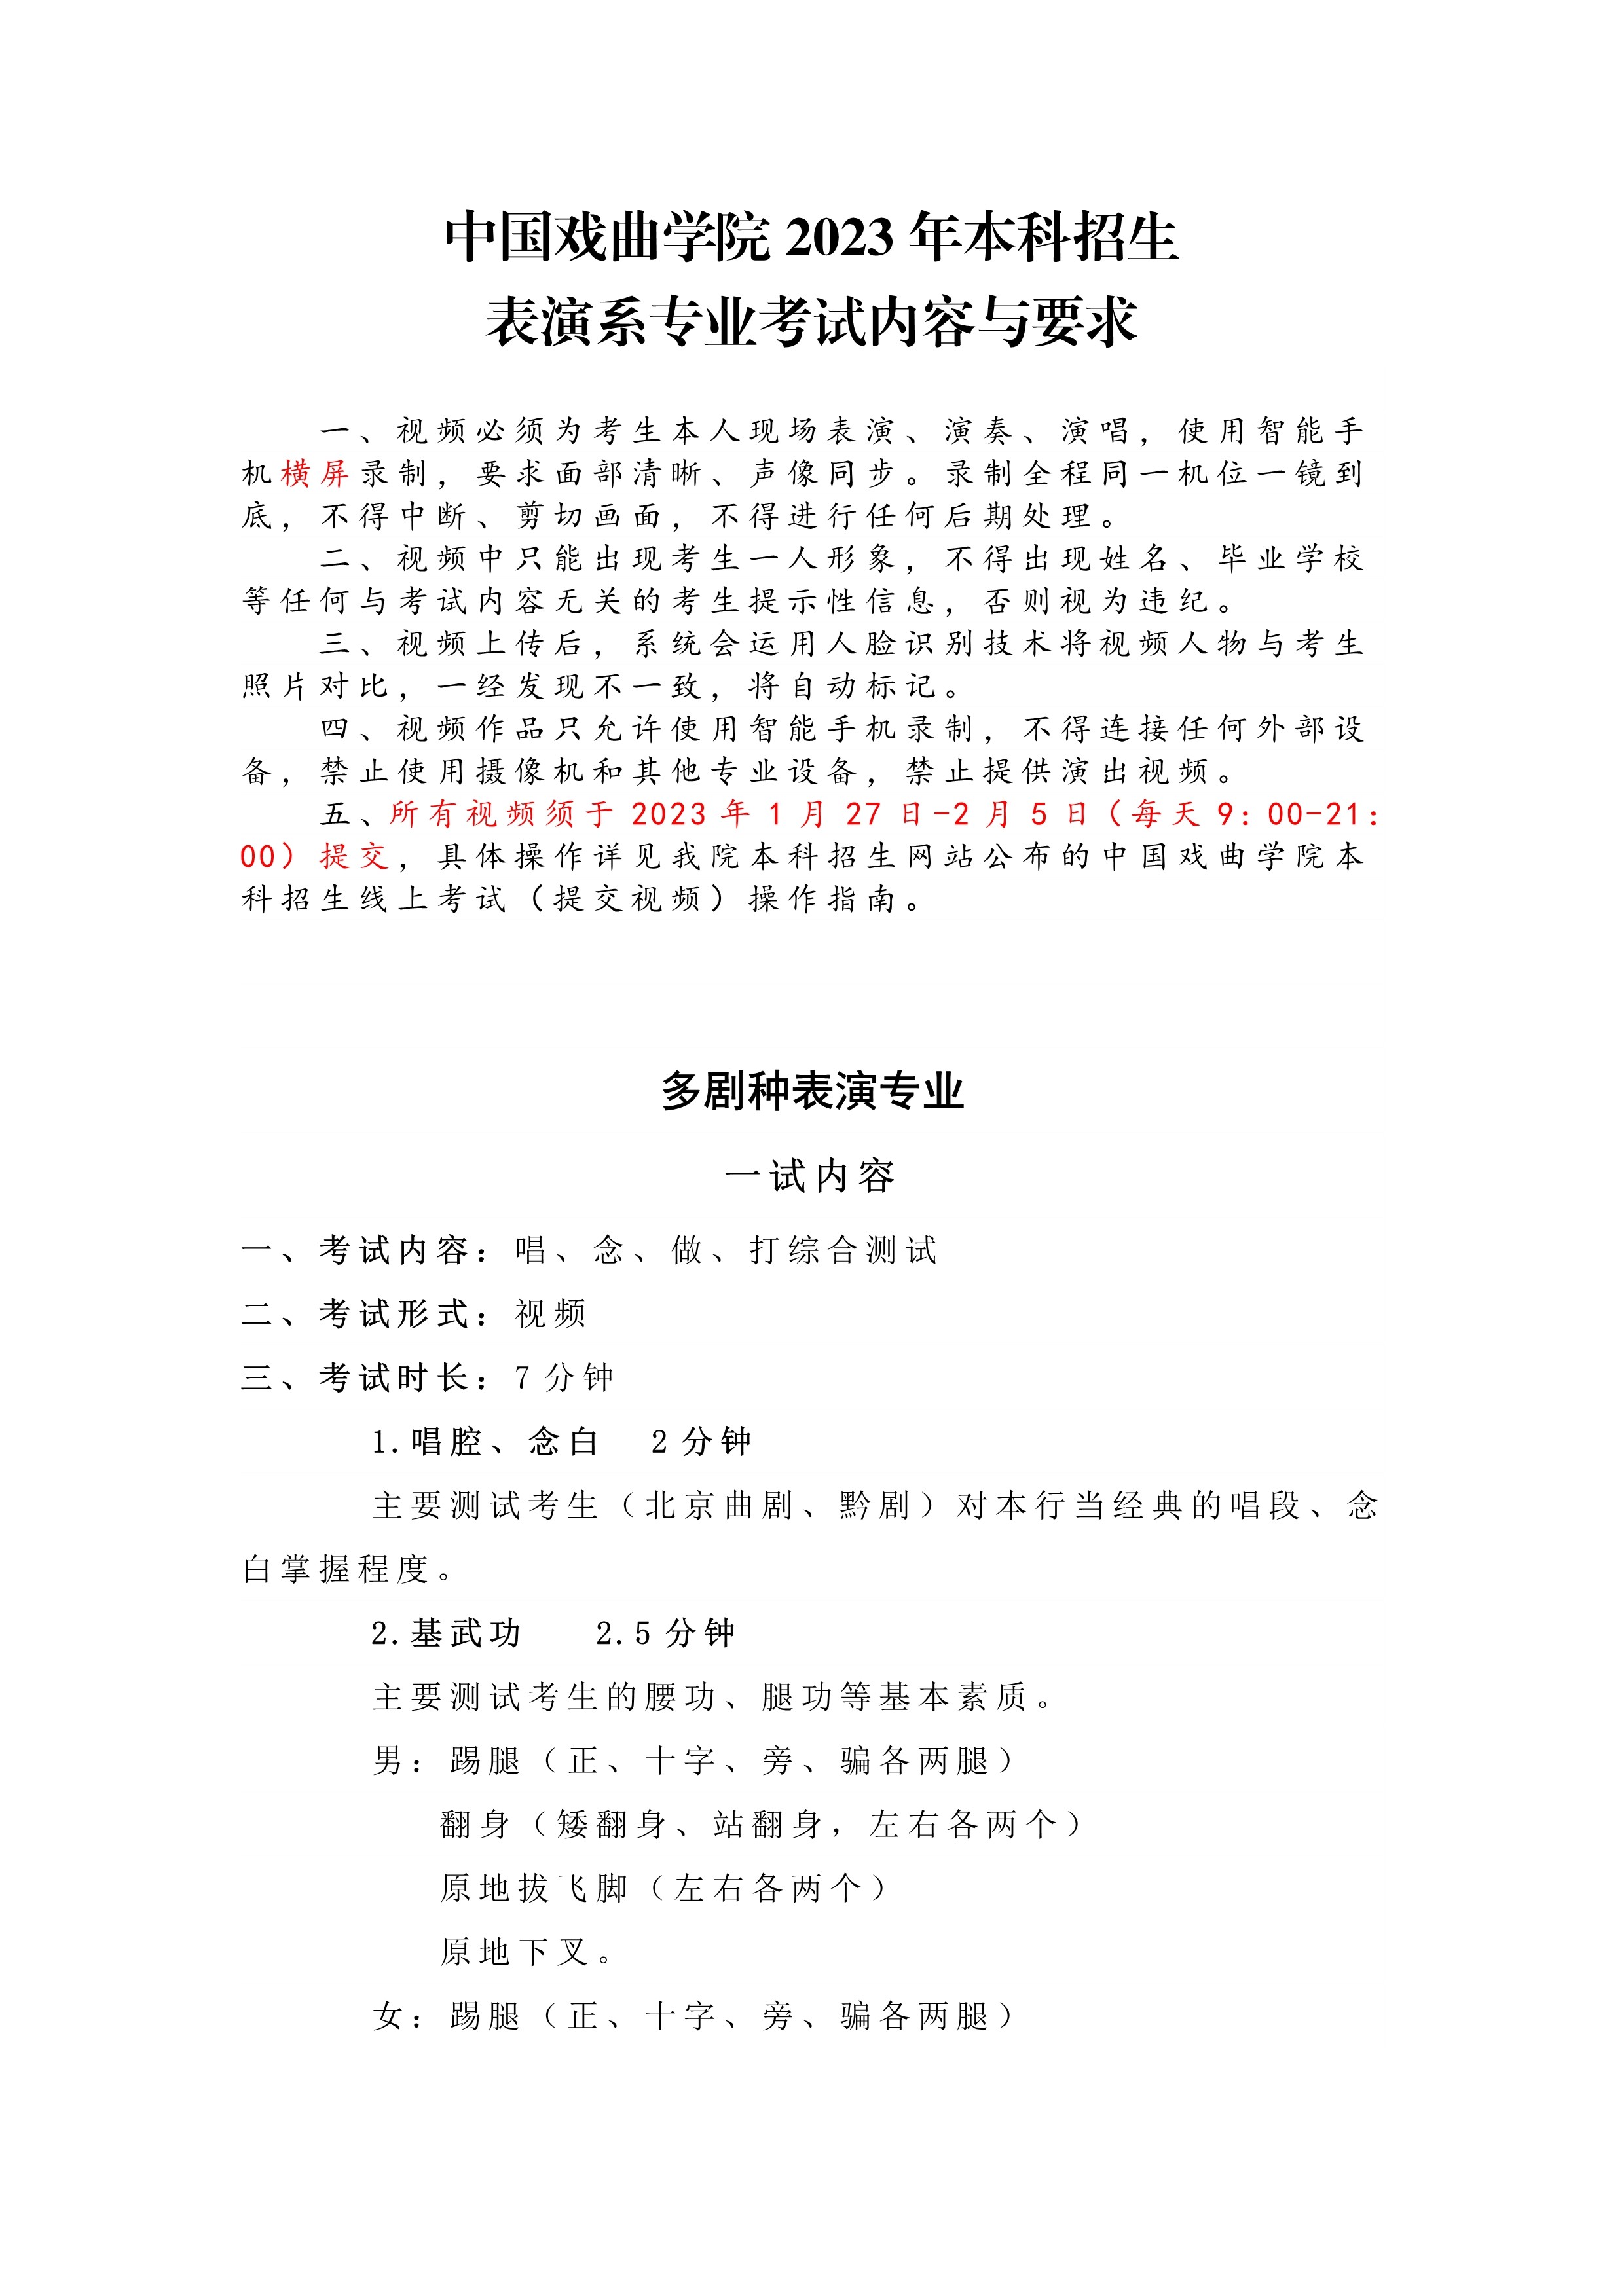 中国戏曲学院2023年本科招生表演系专业考试内容与要求_1.jpg